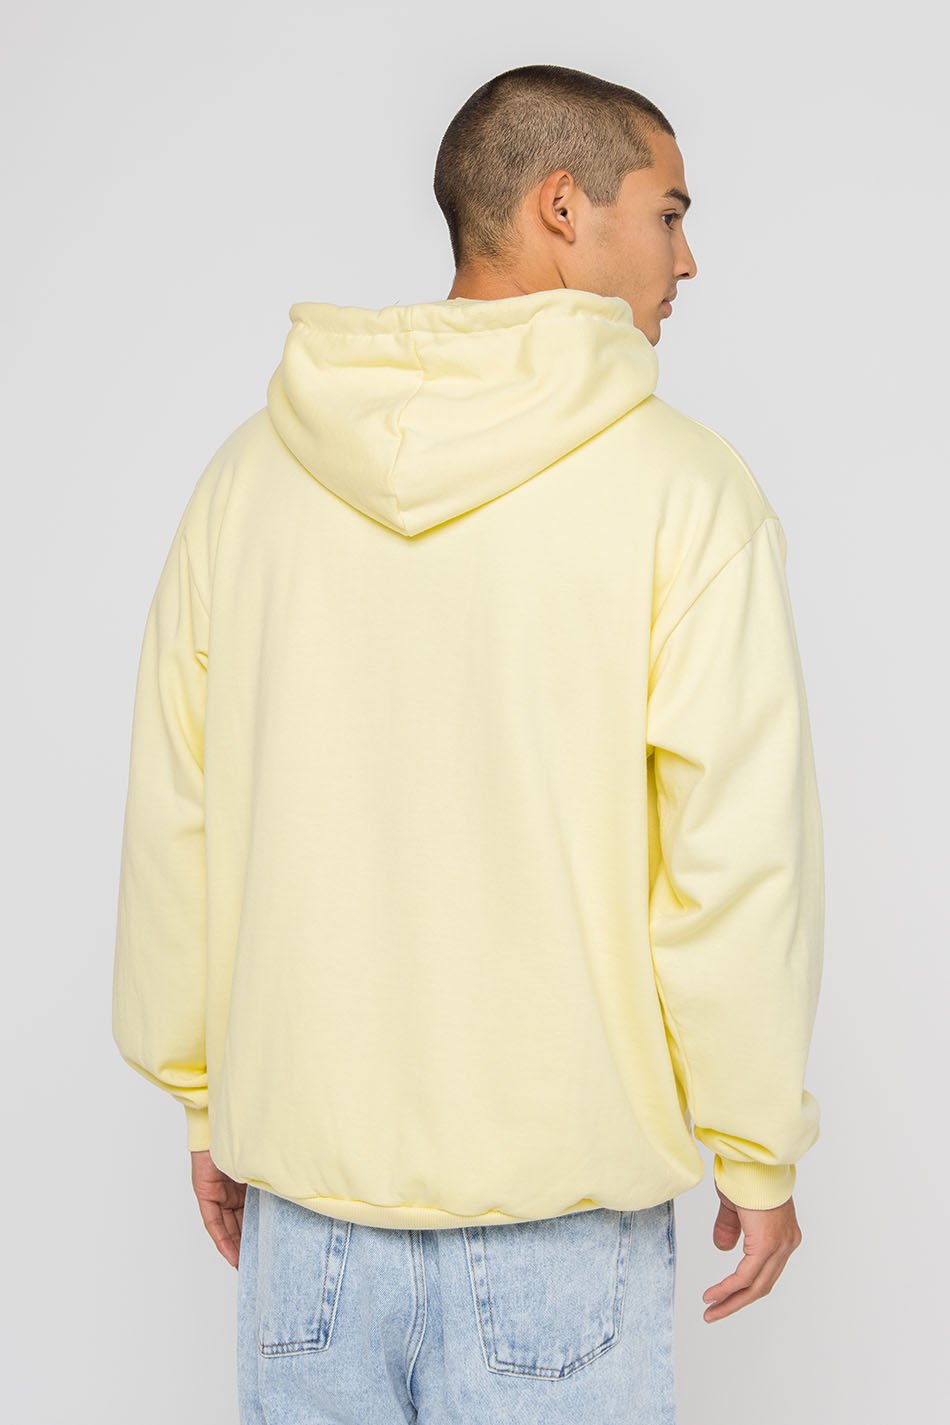 Acid Yellow Vancouver Sweatshirt